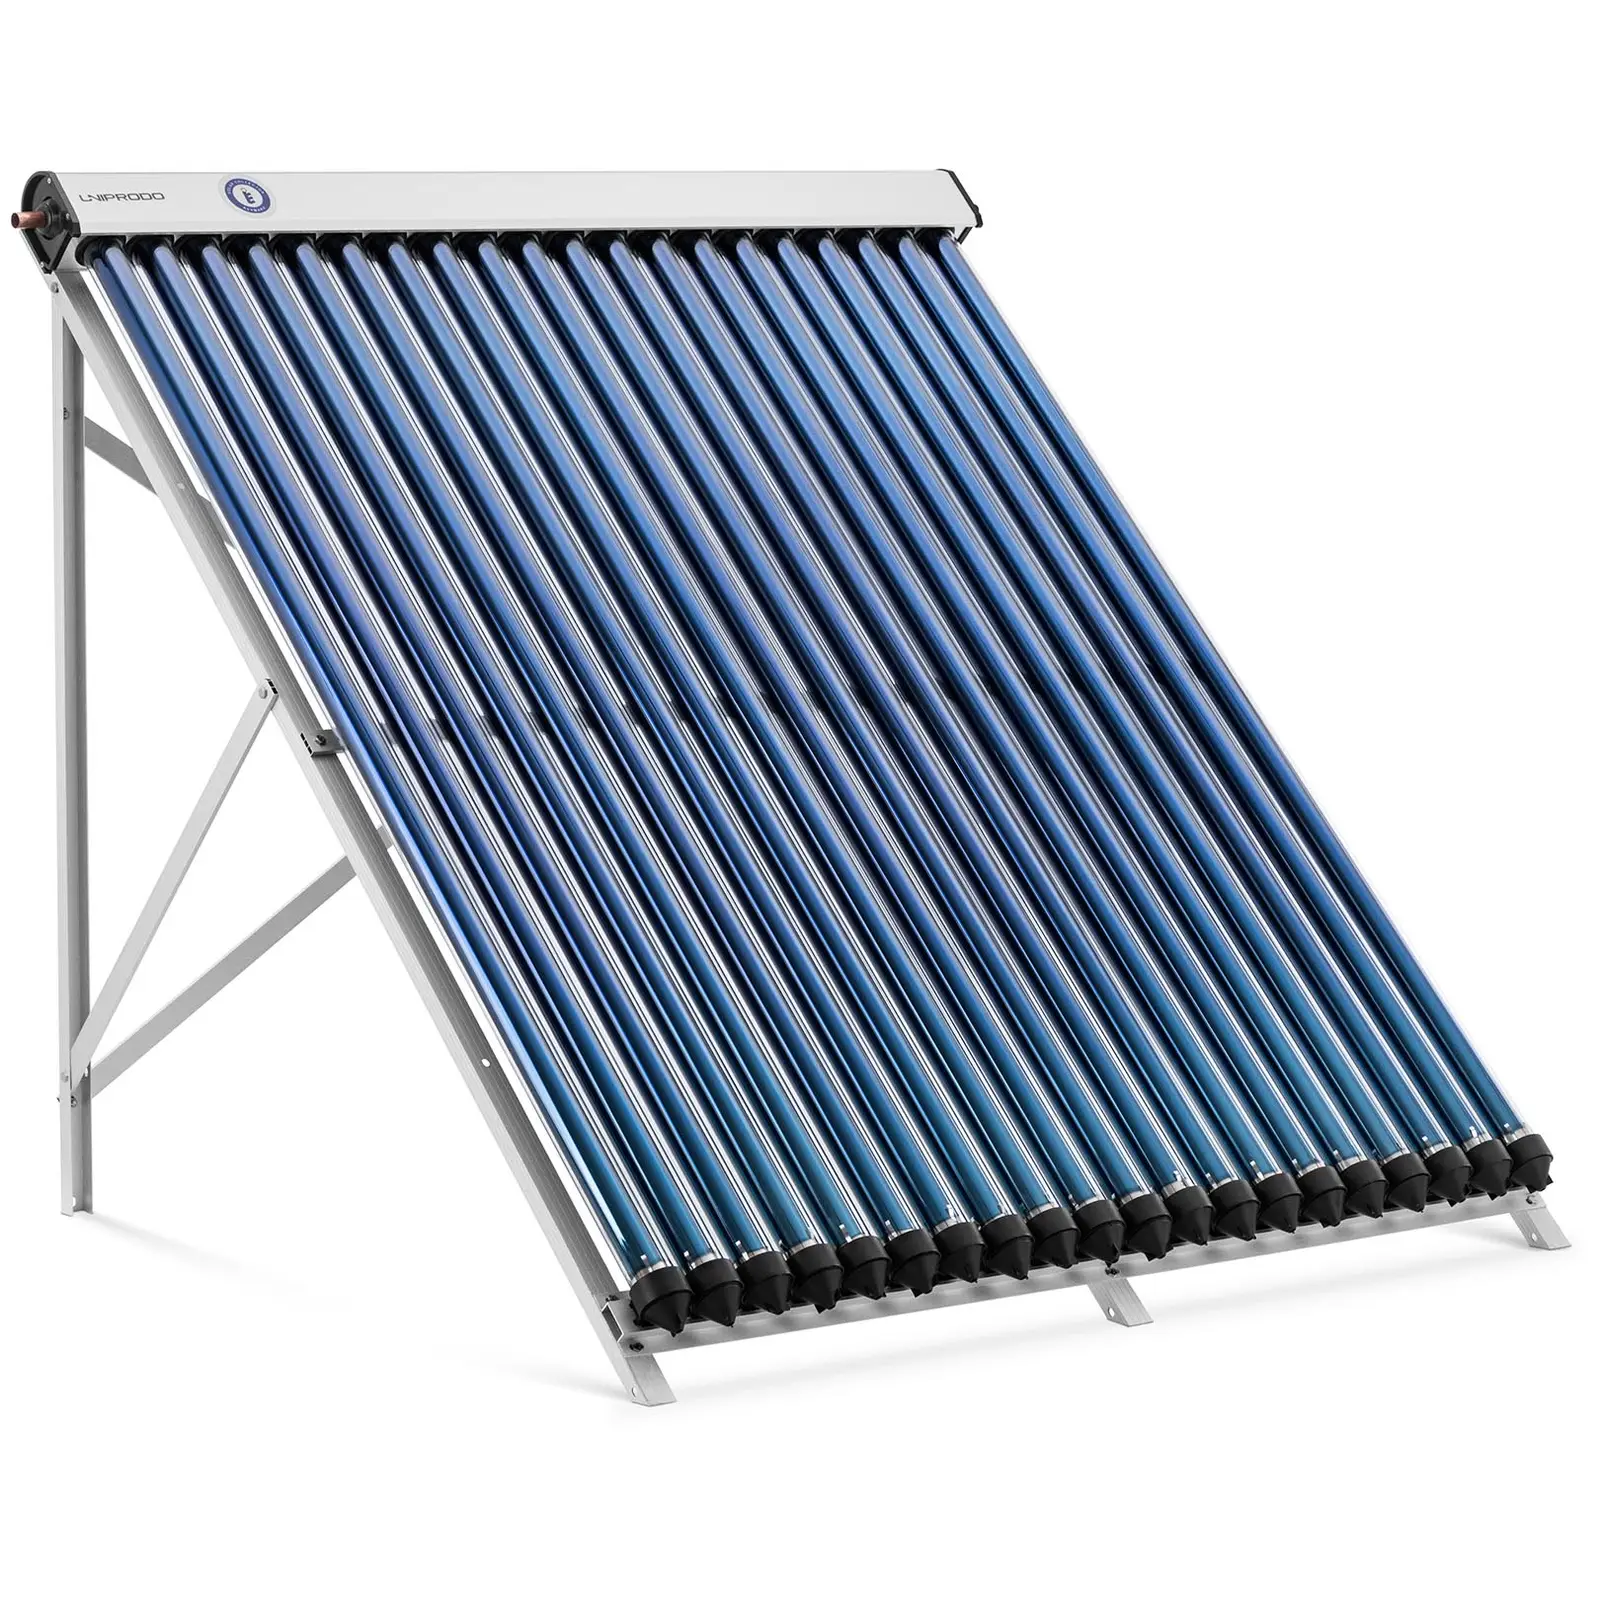 Rúrkový kolektor - solárna tepelná energia - 20 trubíc -  l - 1.6 m² - -45 – 90 °C